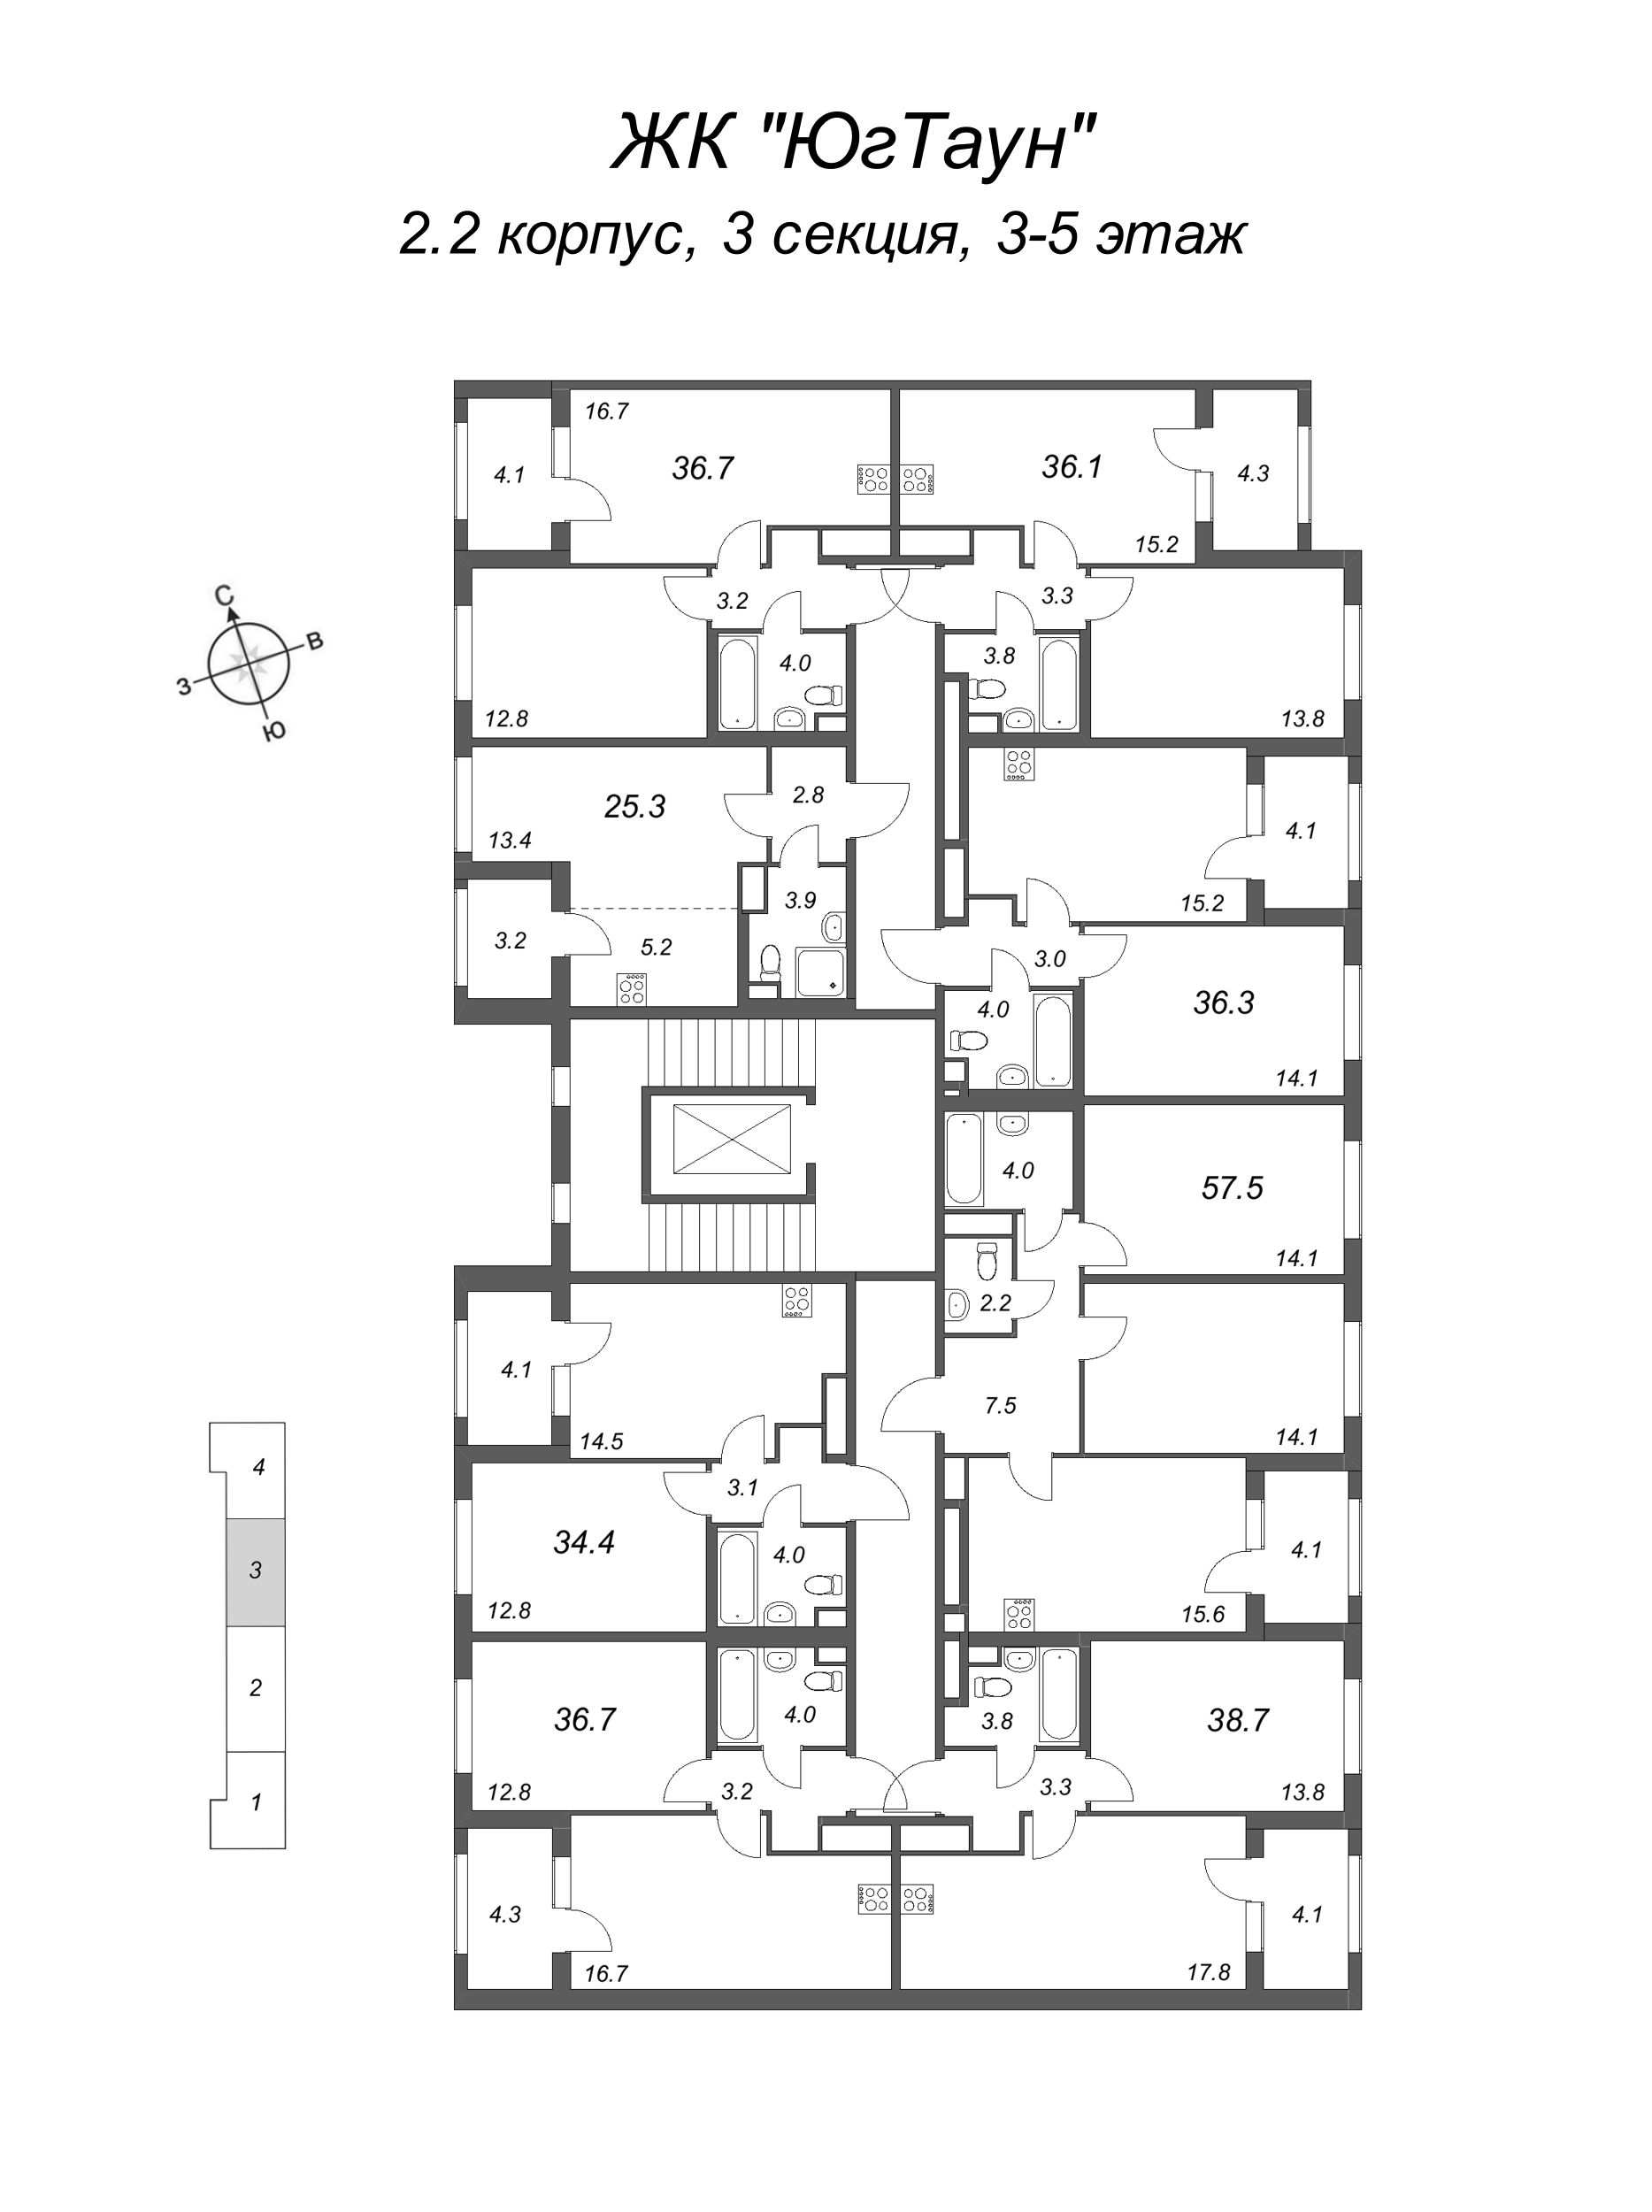 1-комнатная квартира, 34.4 м² в ЖК "ЮгТаун" - планировка этажа